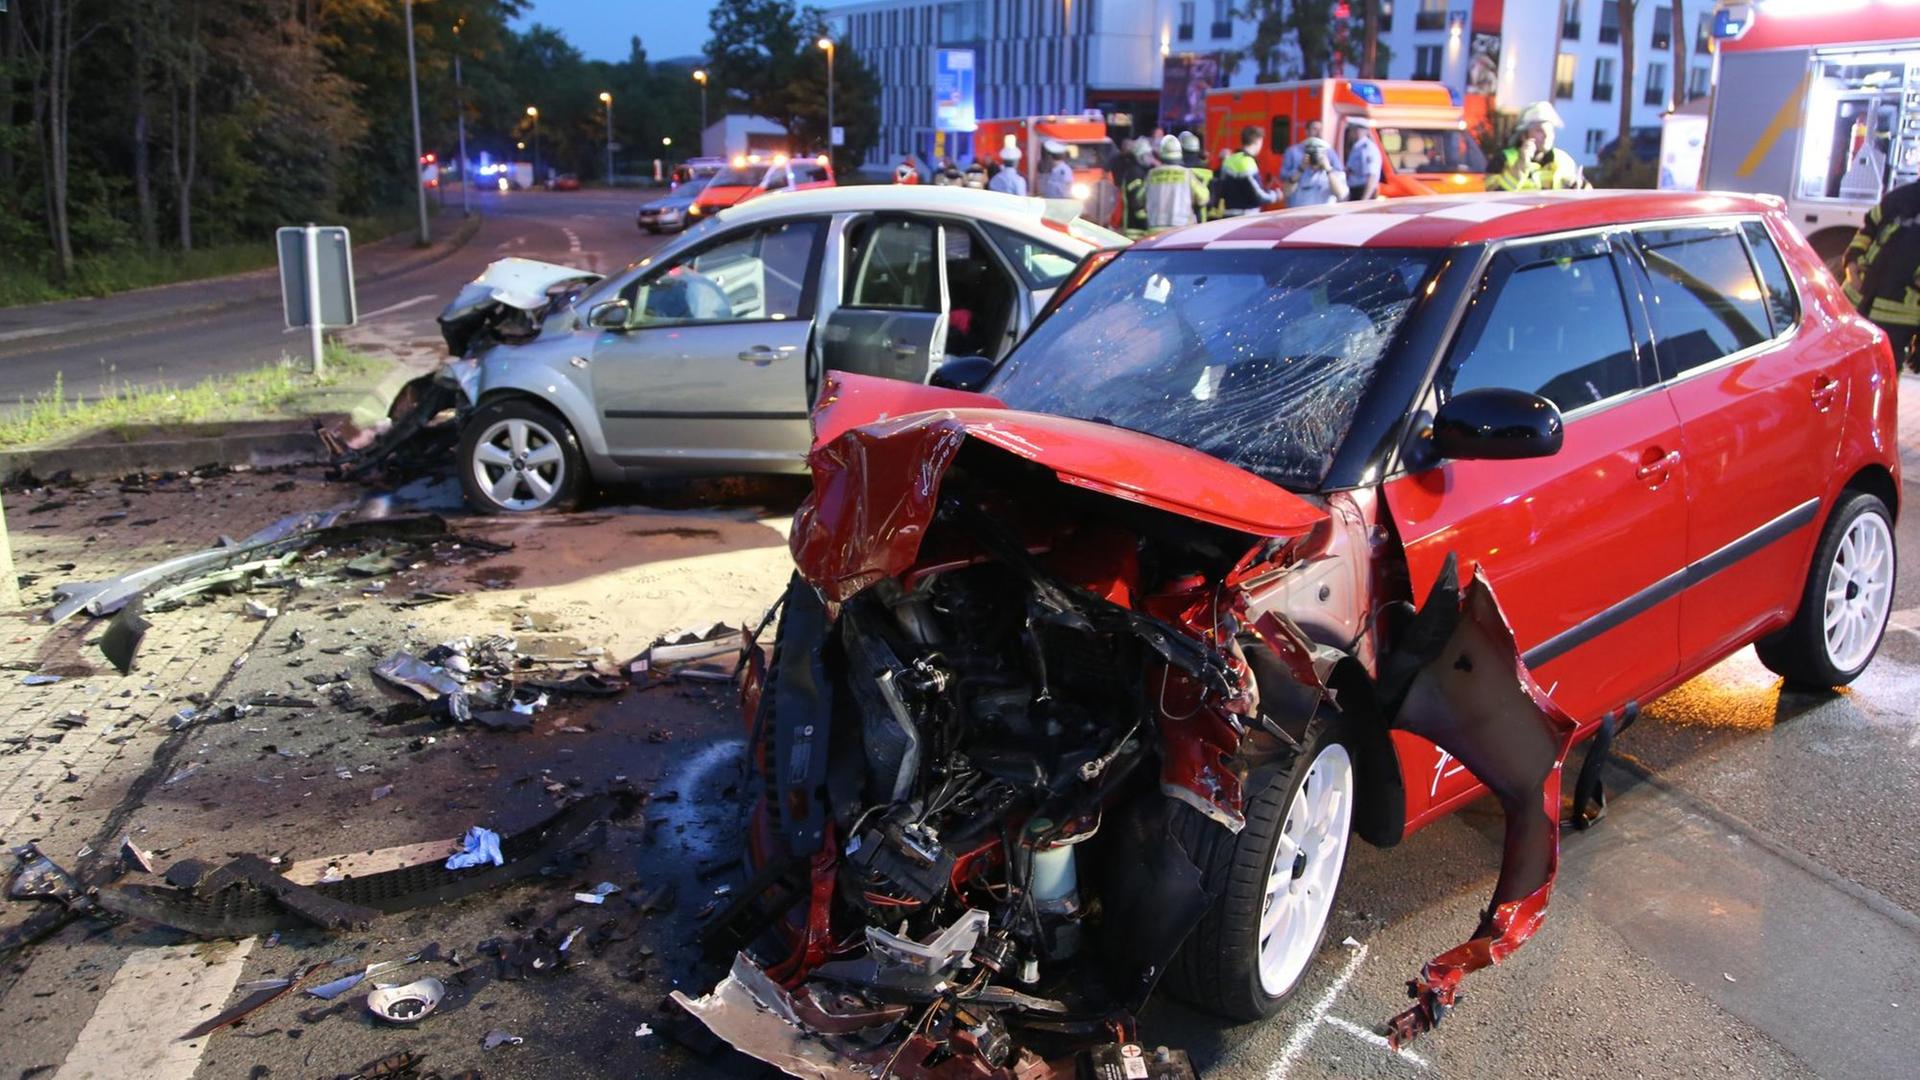 Zerstörte Fahrzeuge nach einem illegalen Autorennen in Hagen